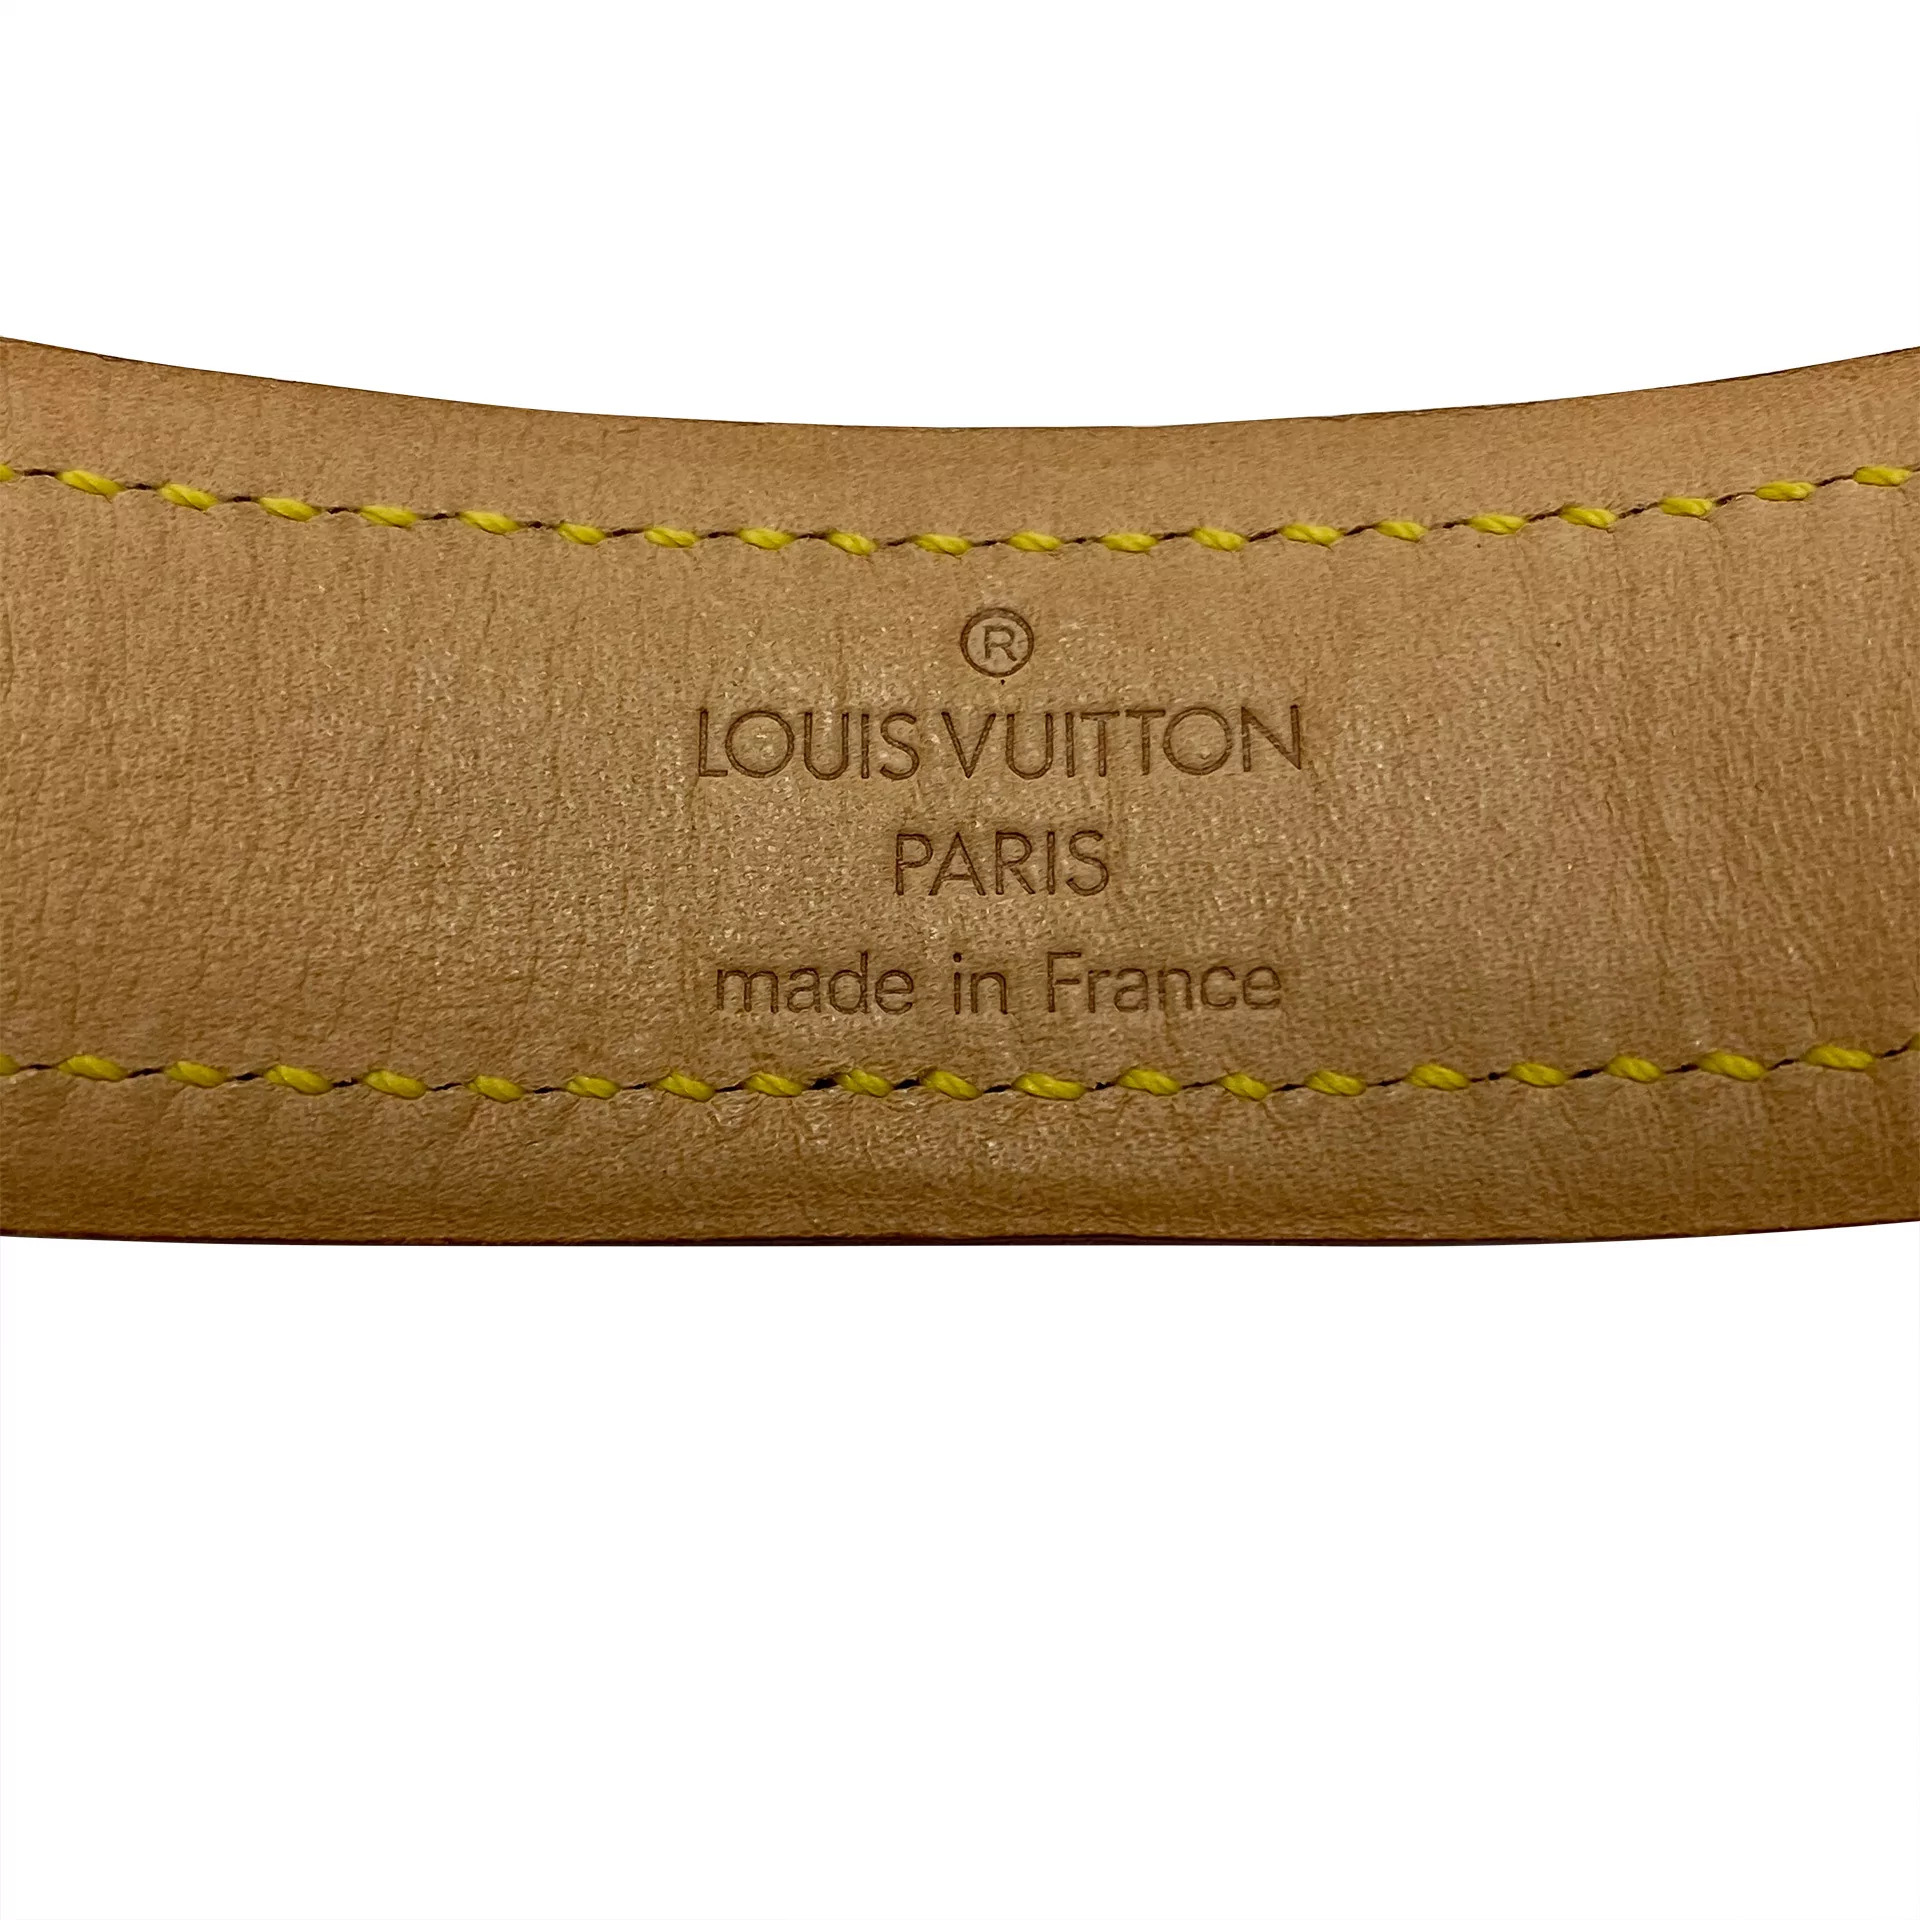 Conjunto Louis Vuitton - Guia + Coleira